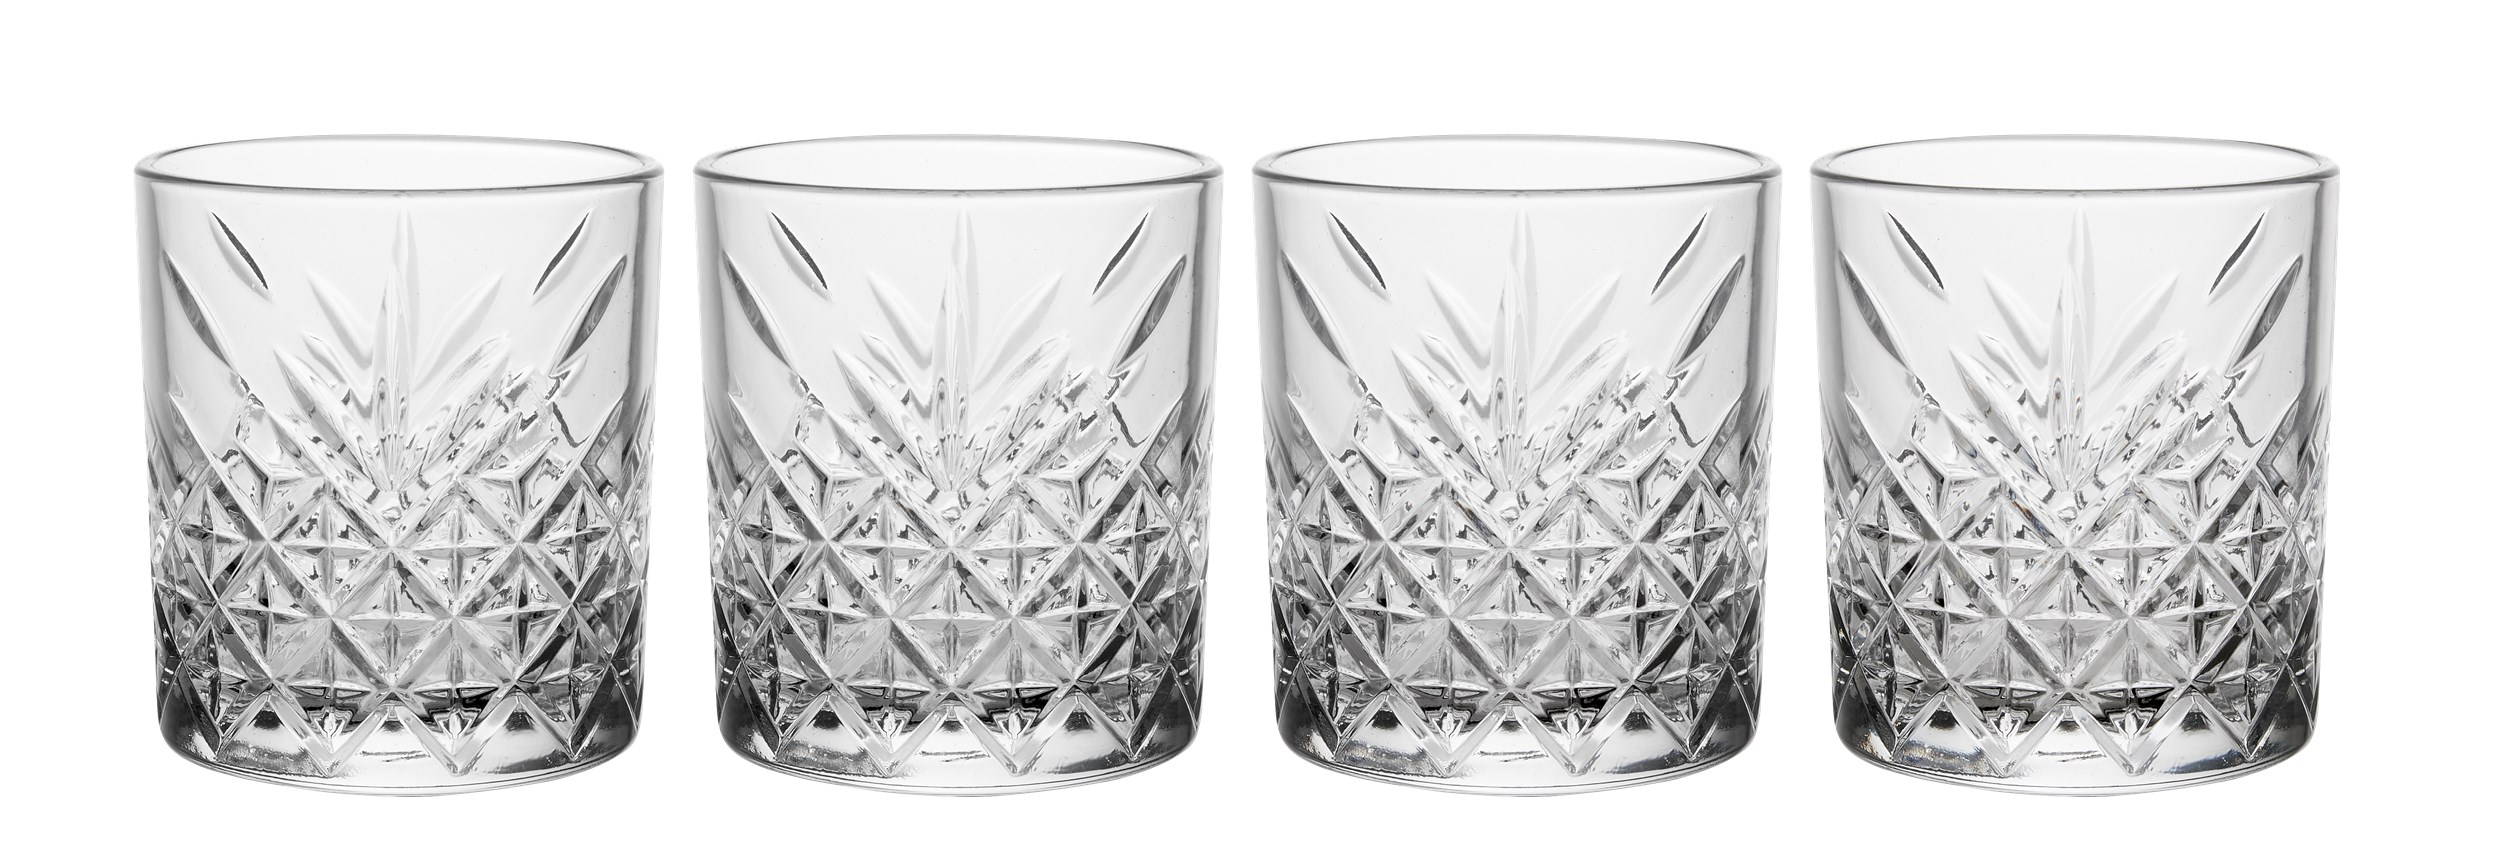 Timeless whiskeyglas i låda - Genomskinligt glas och fasetterat mönster